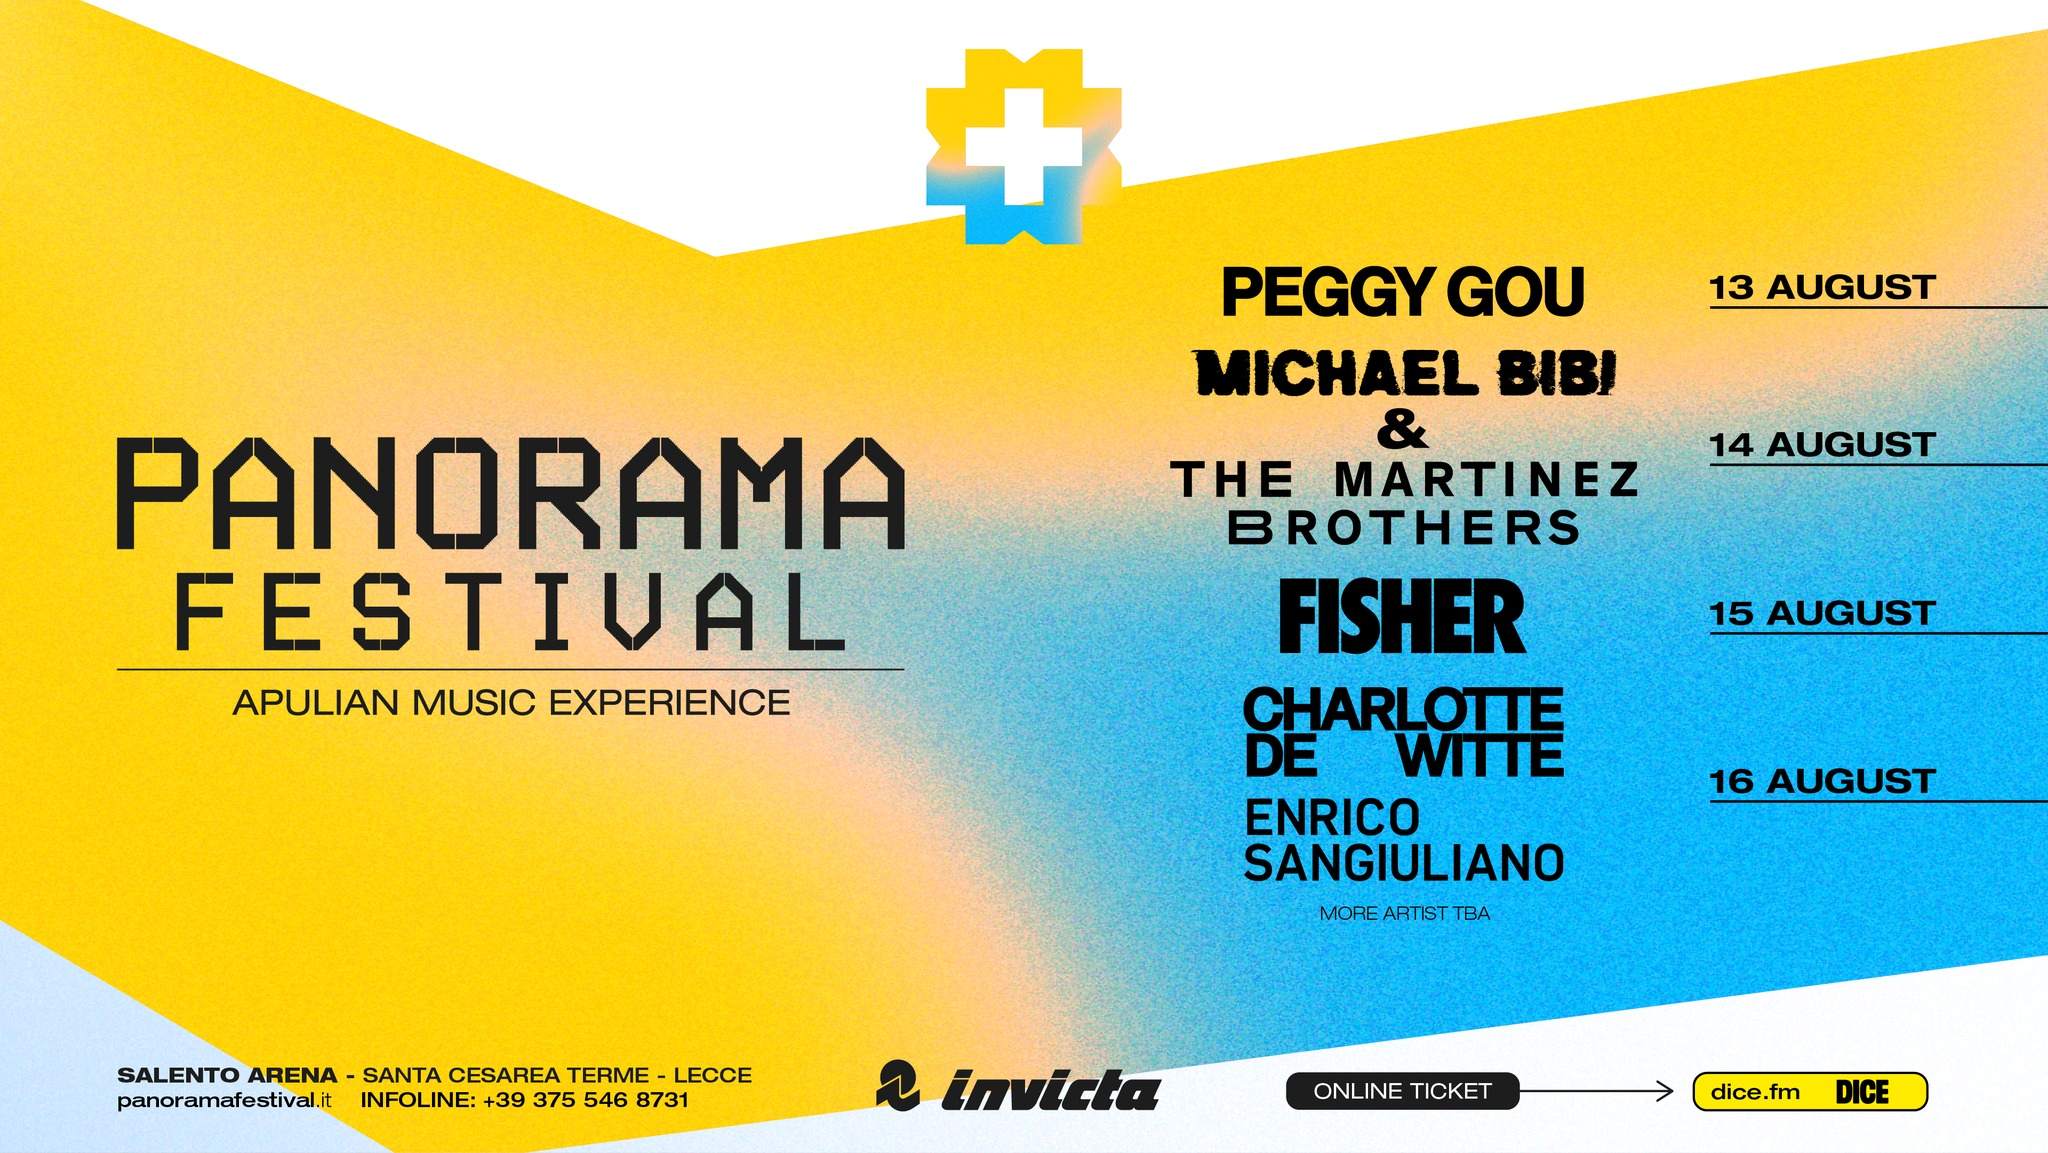 Panorama Festival - Página frontal